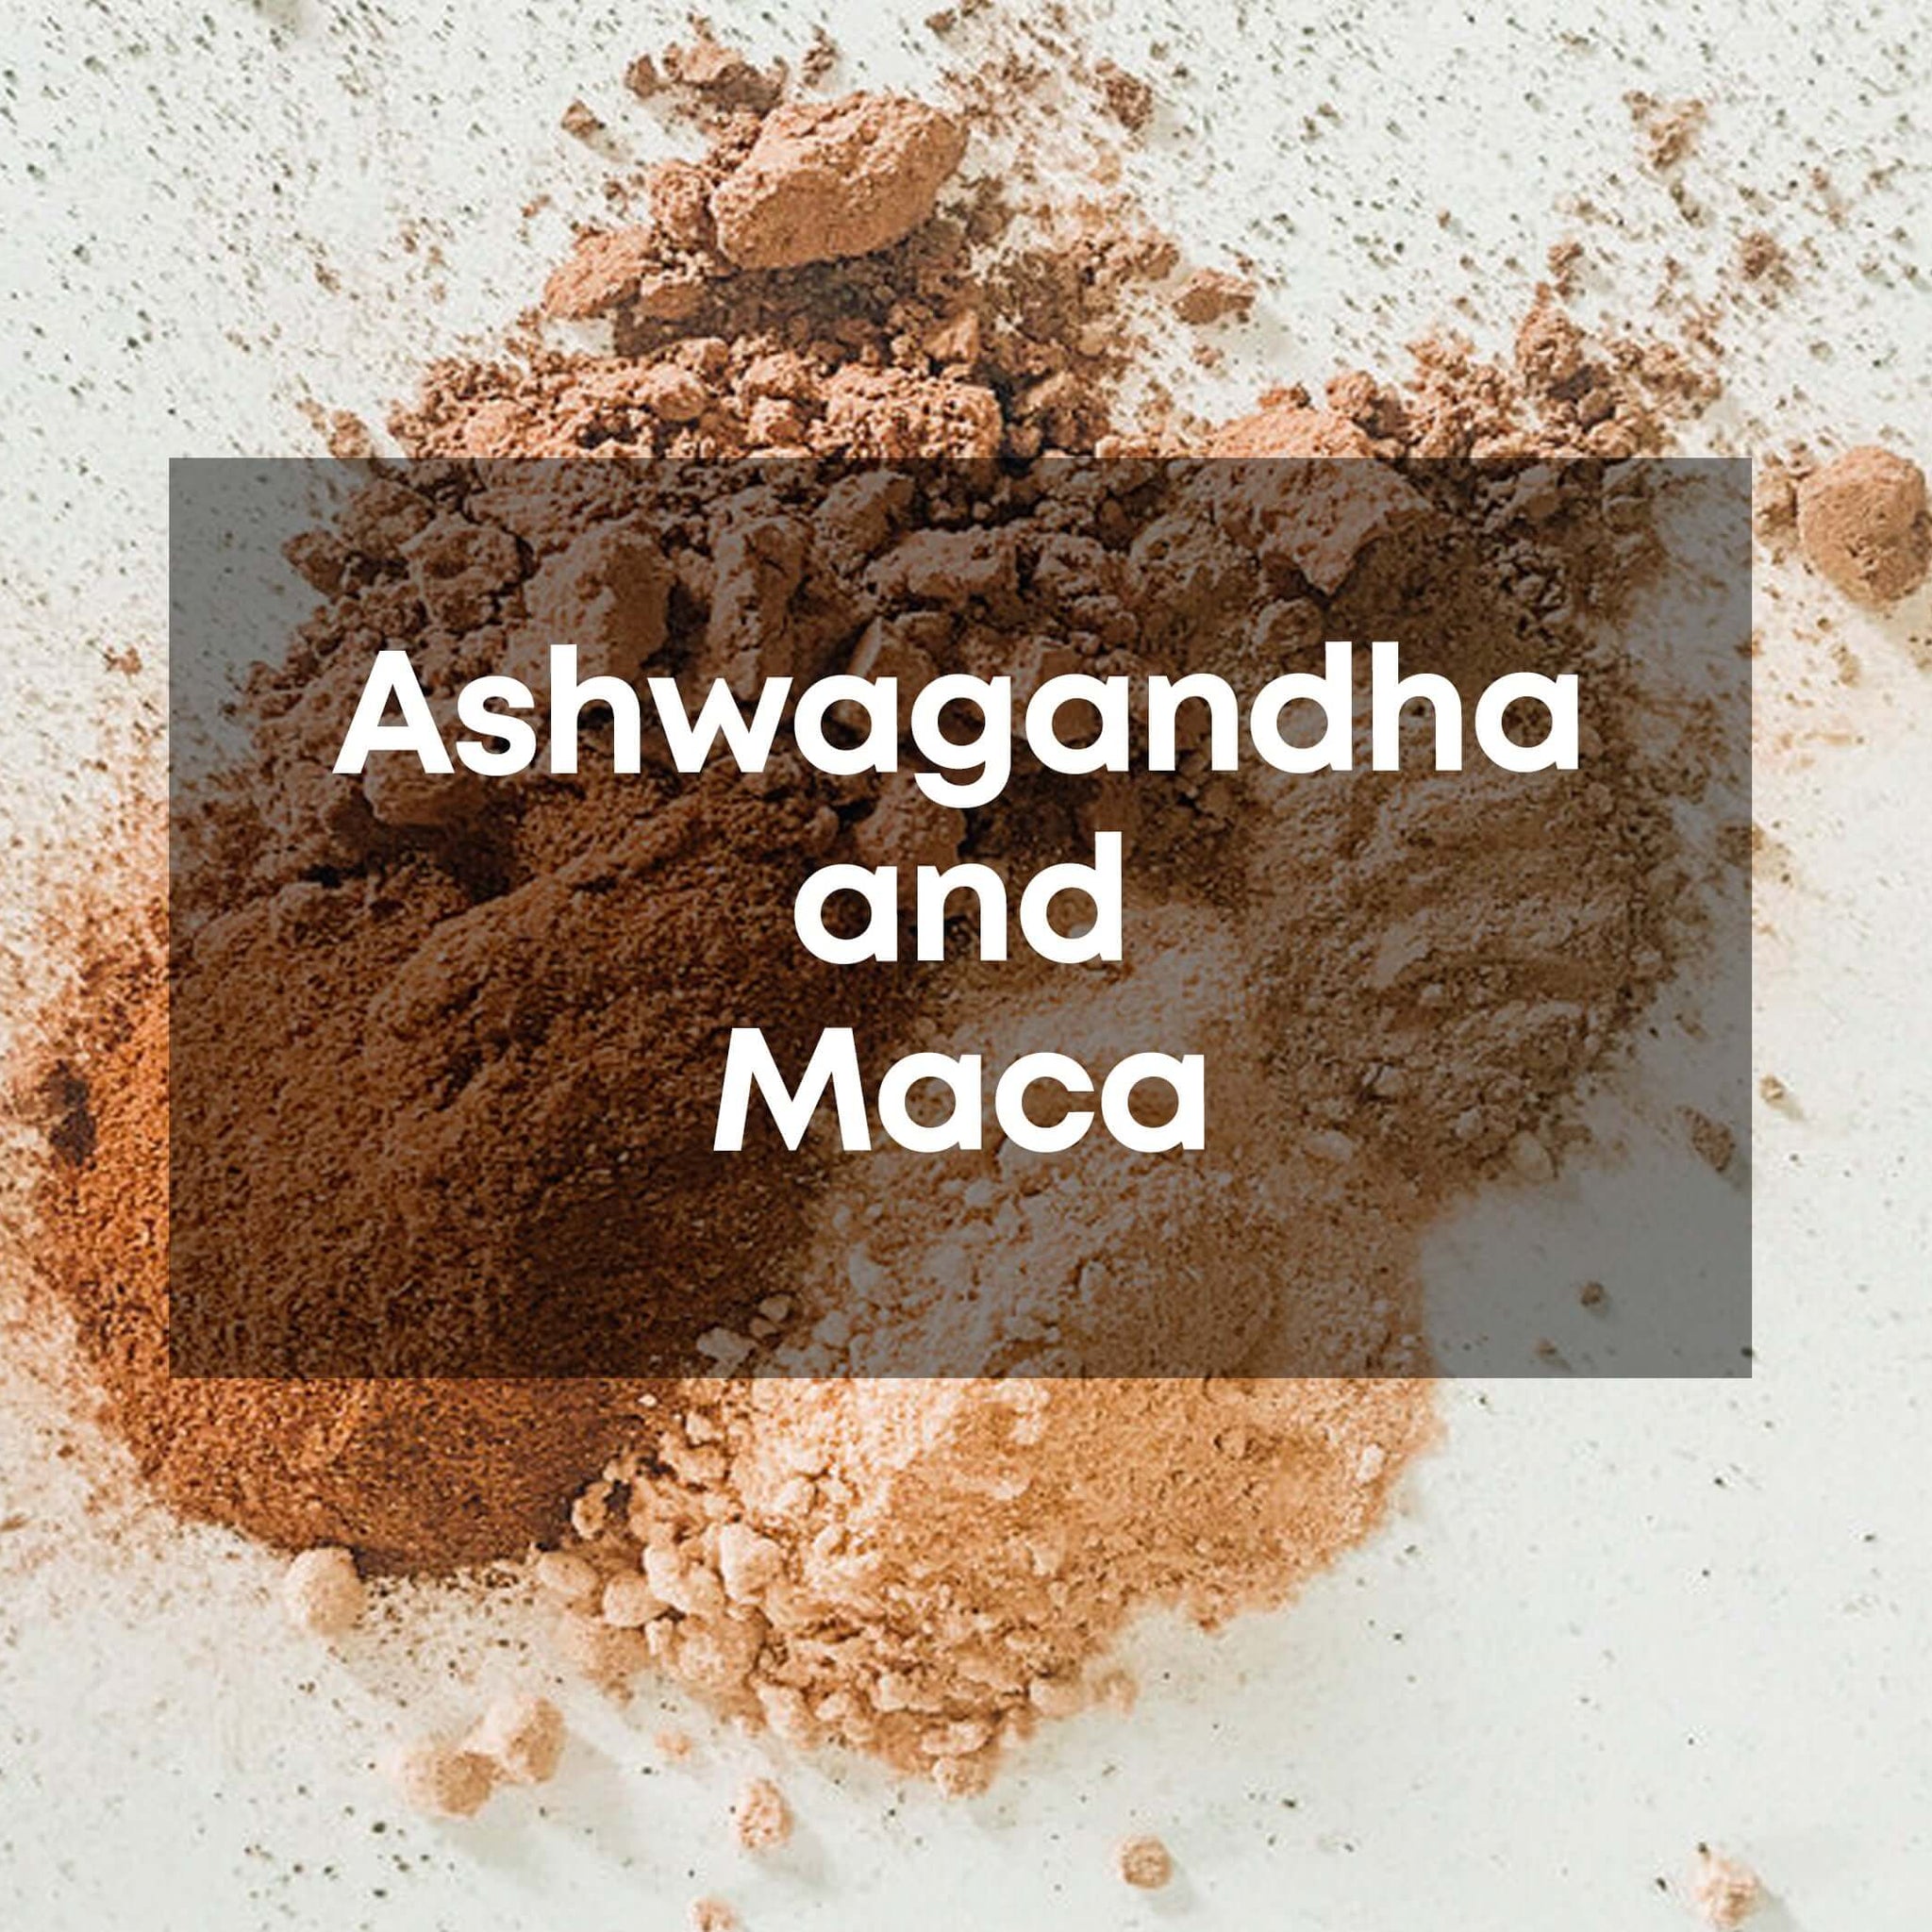 ashwagandha and maca root powders